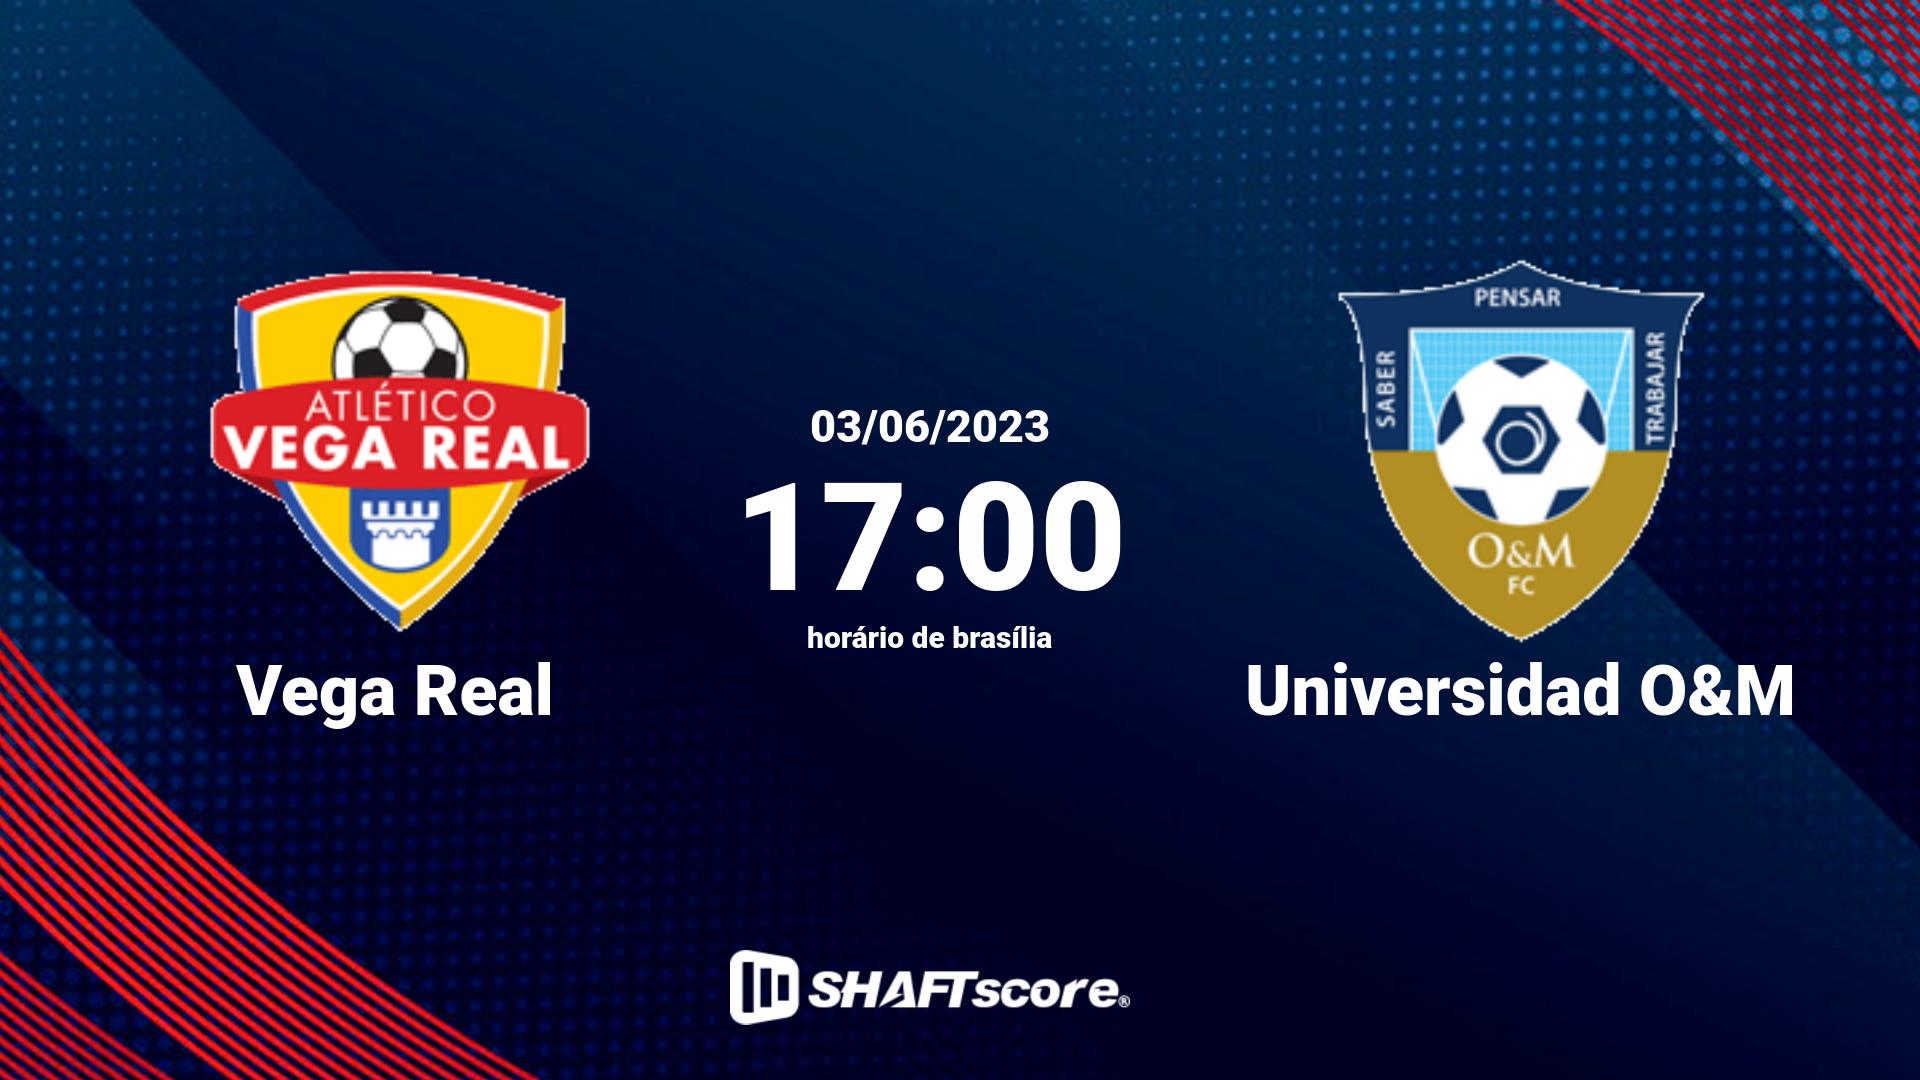 Estatísticas do jogo Vega Real vs Universidad O&M 03.06 17:00